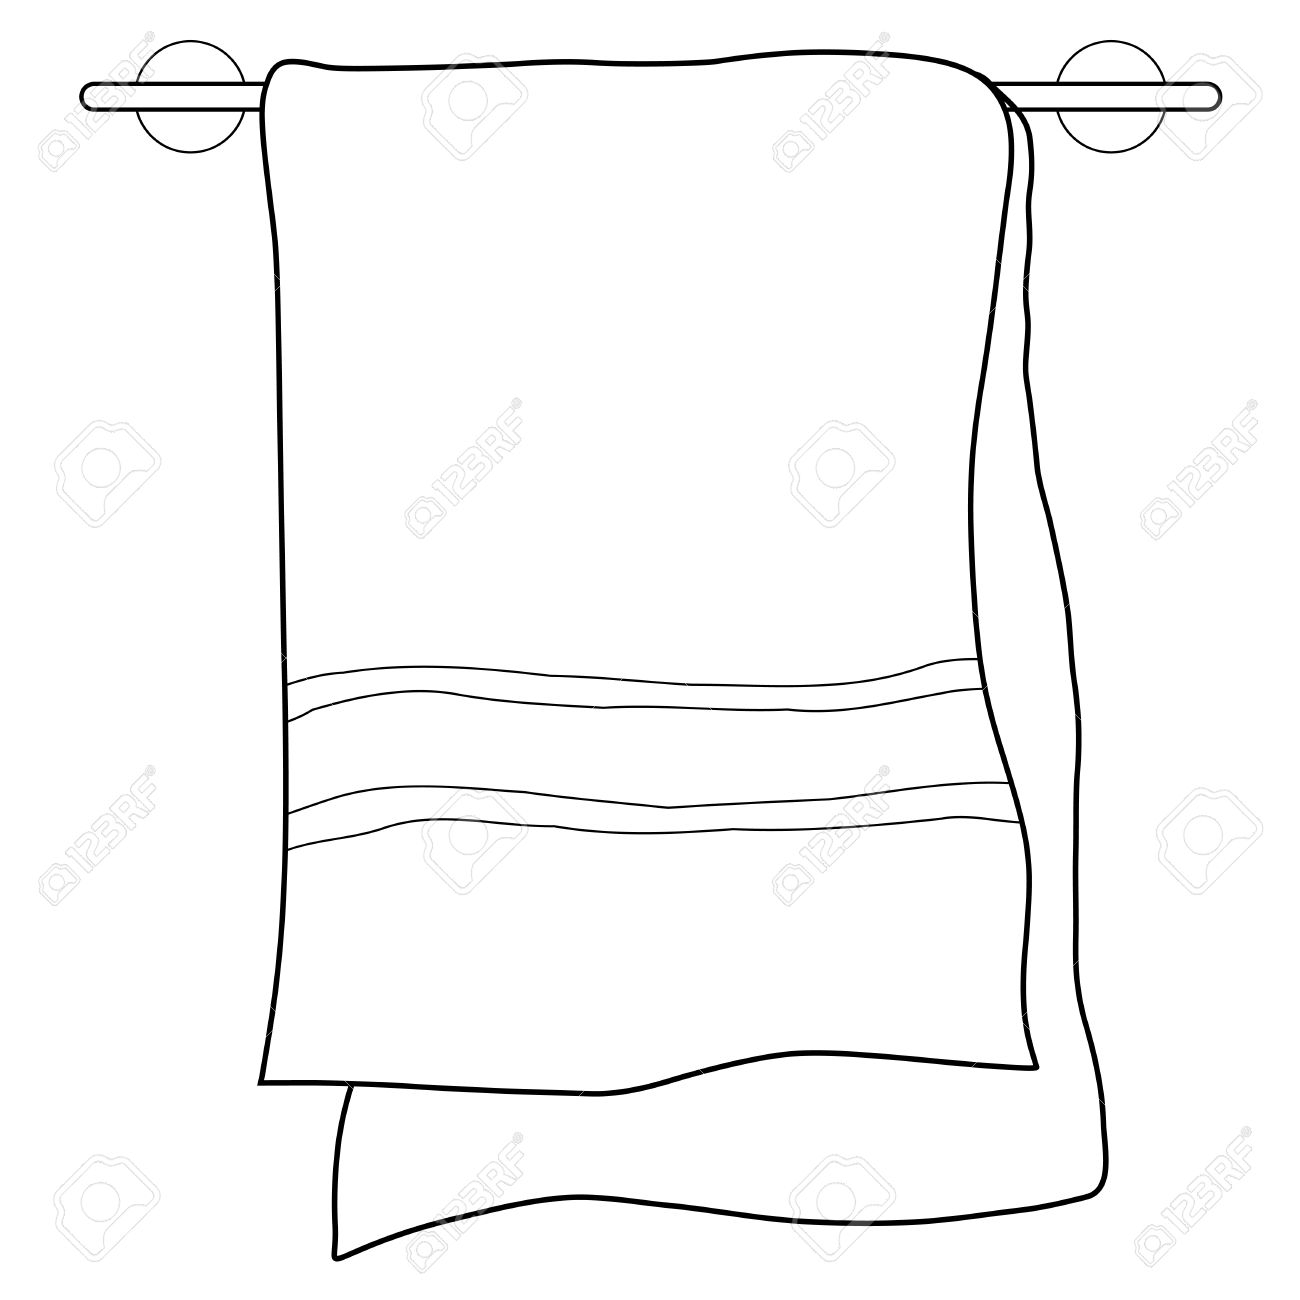 Простая раскраска полотенце висит на держателе для полотенец раскраска